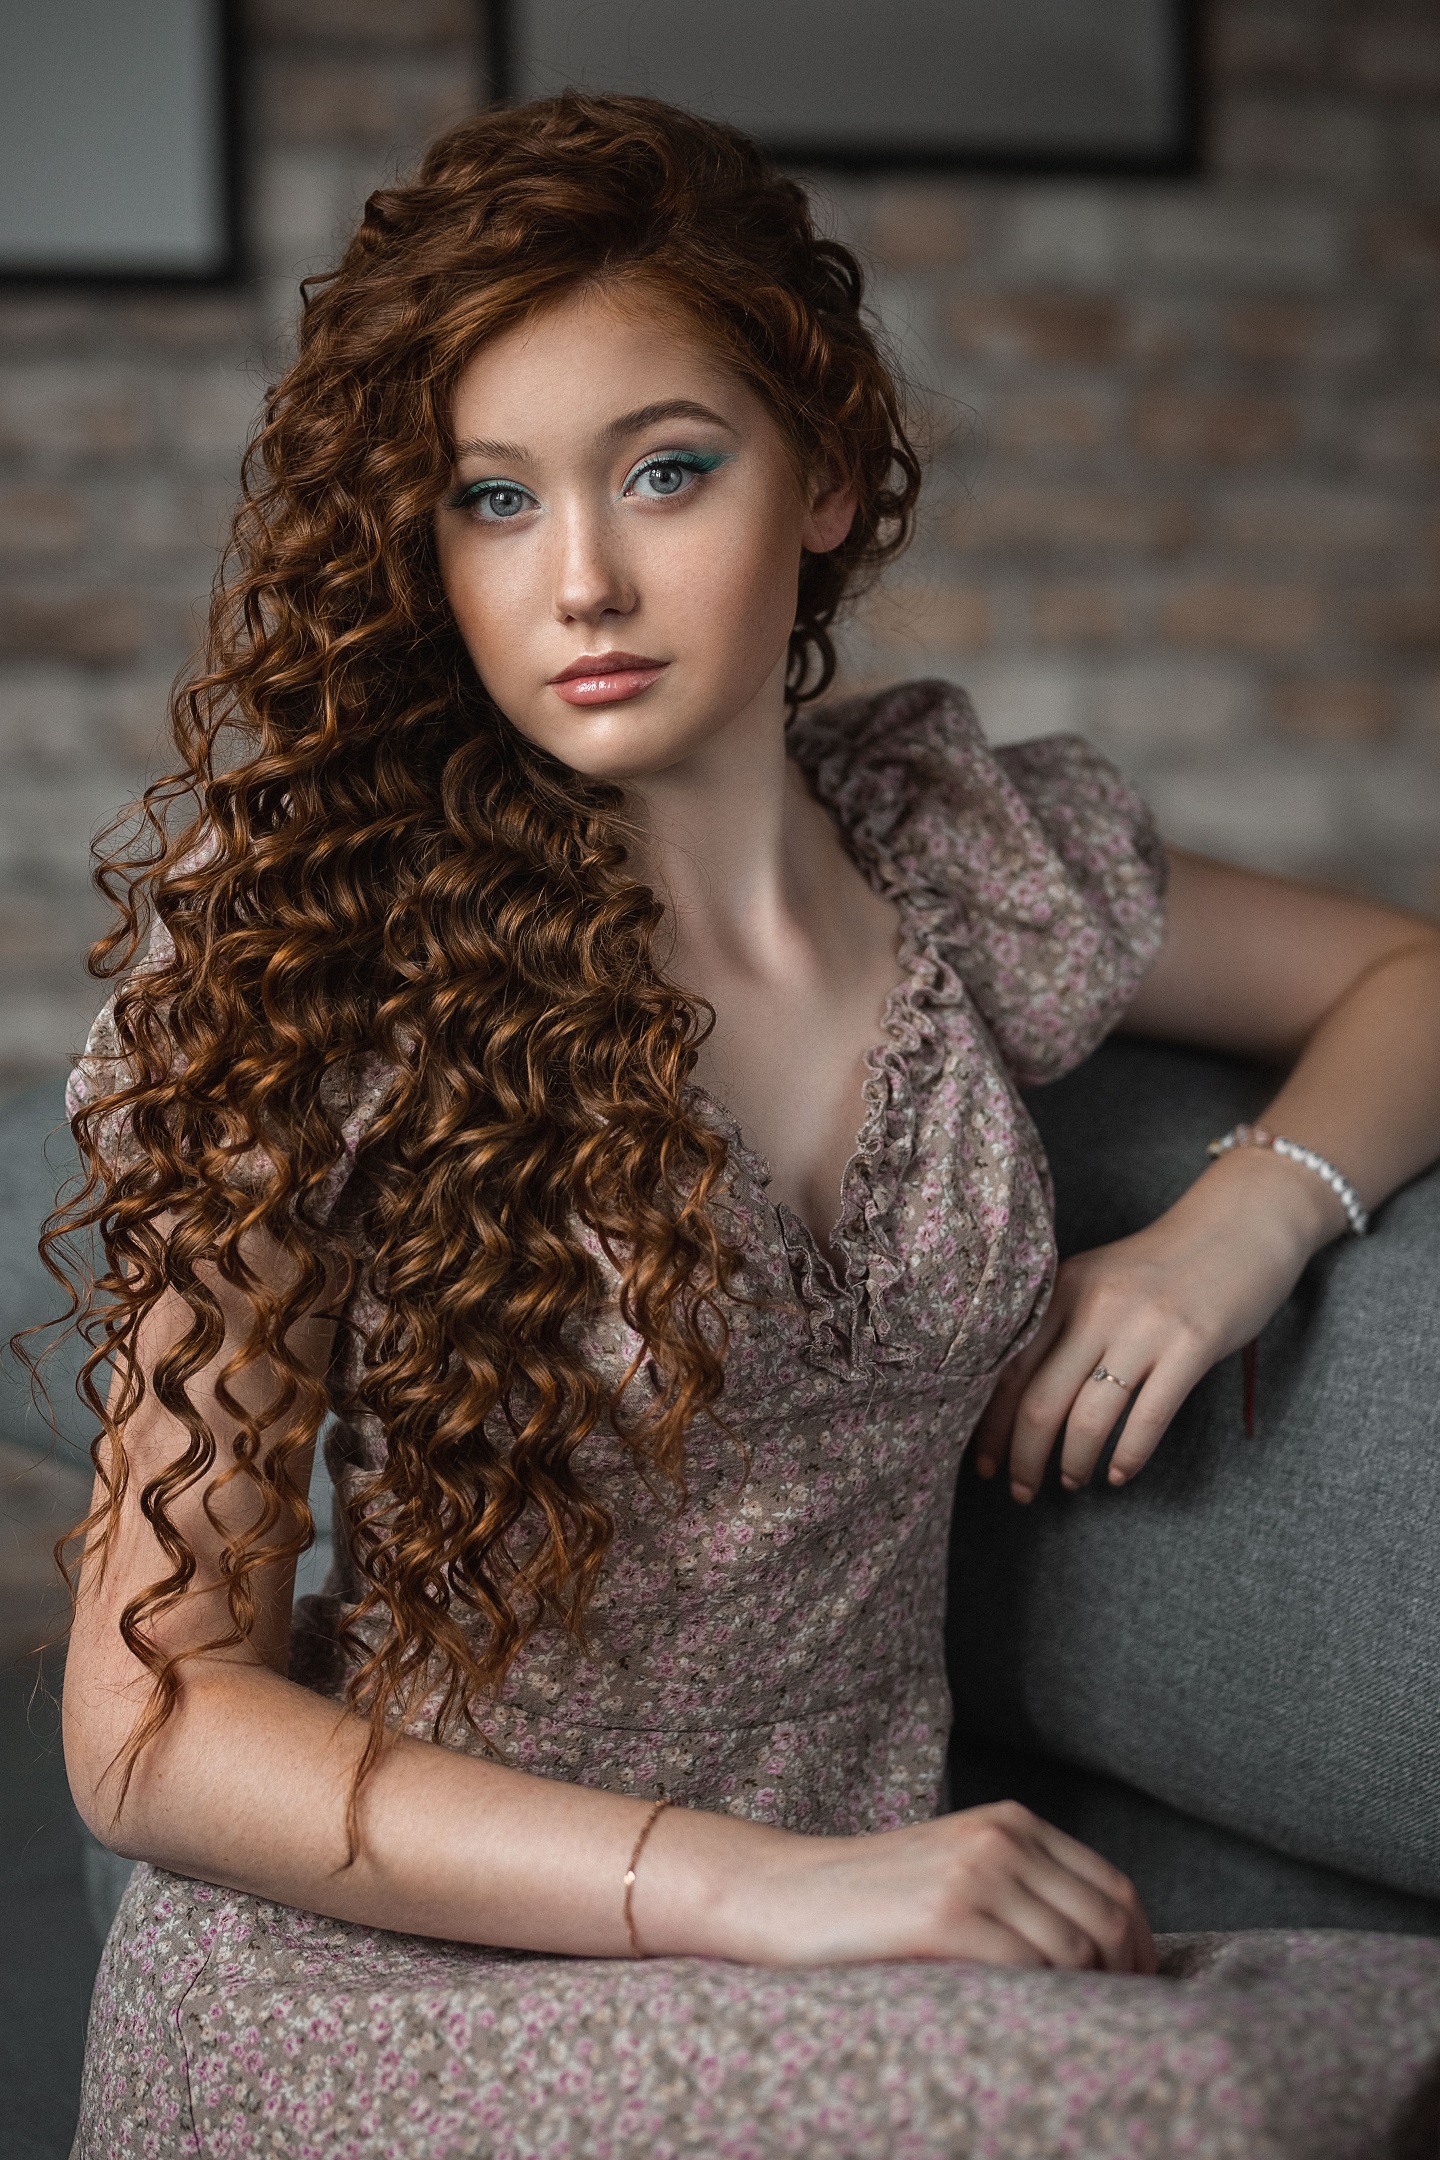 People 1440x2160 Vladimir Vasilev women brunette long hair curly hair makeup eyeshadow dress brown clothing couch indoors Angelina (model) portrait display